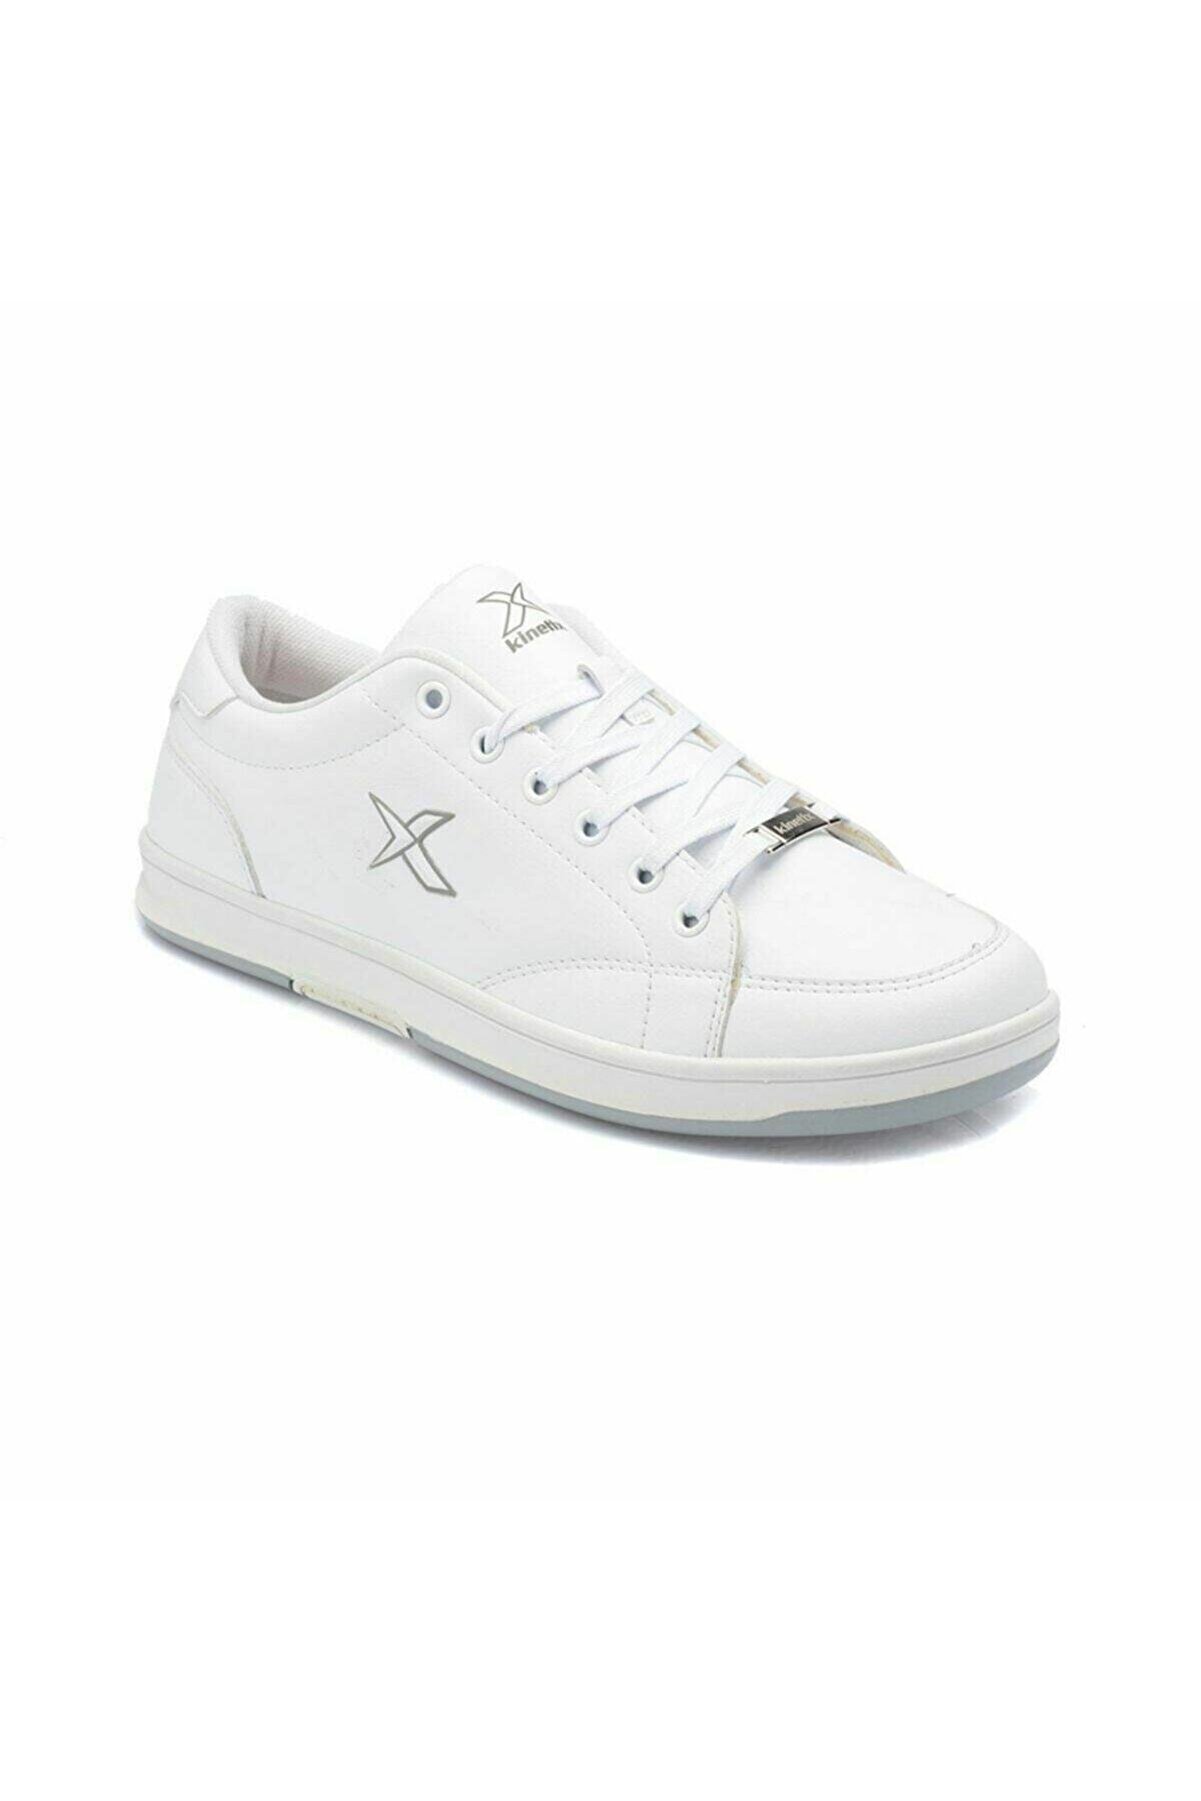 Kinetix HERBERT W Beyaz Kadın Sneaker Ayakkabı 100233005